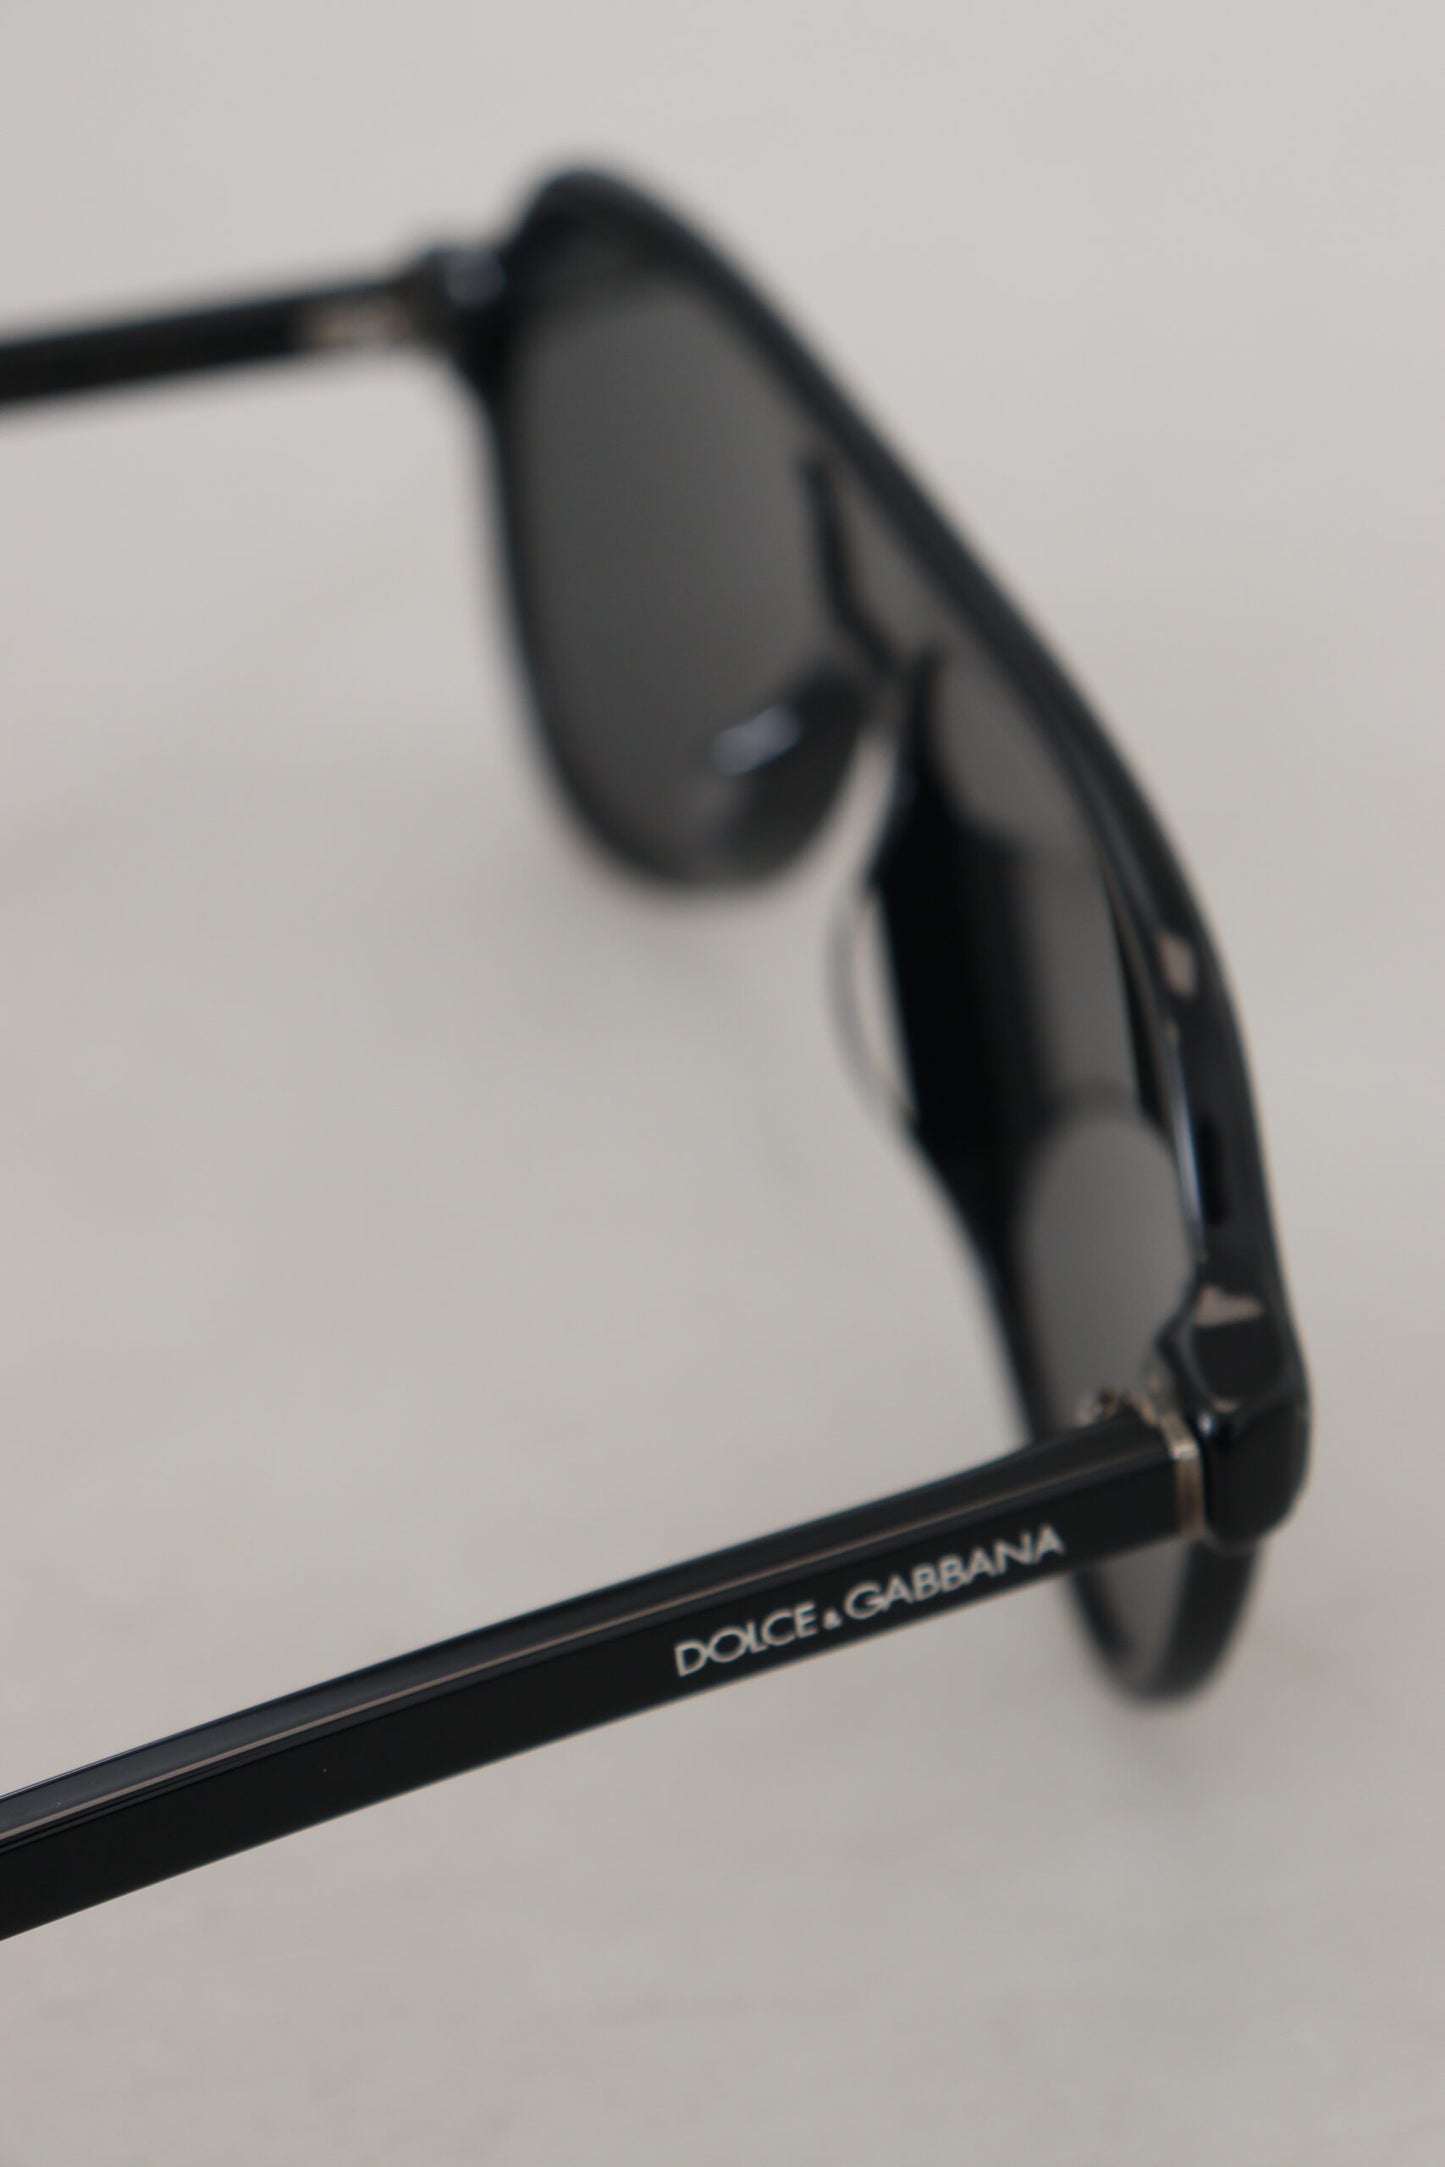 Sophisticated Unisex Designer Sunglasses